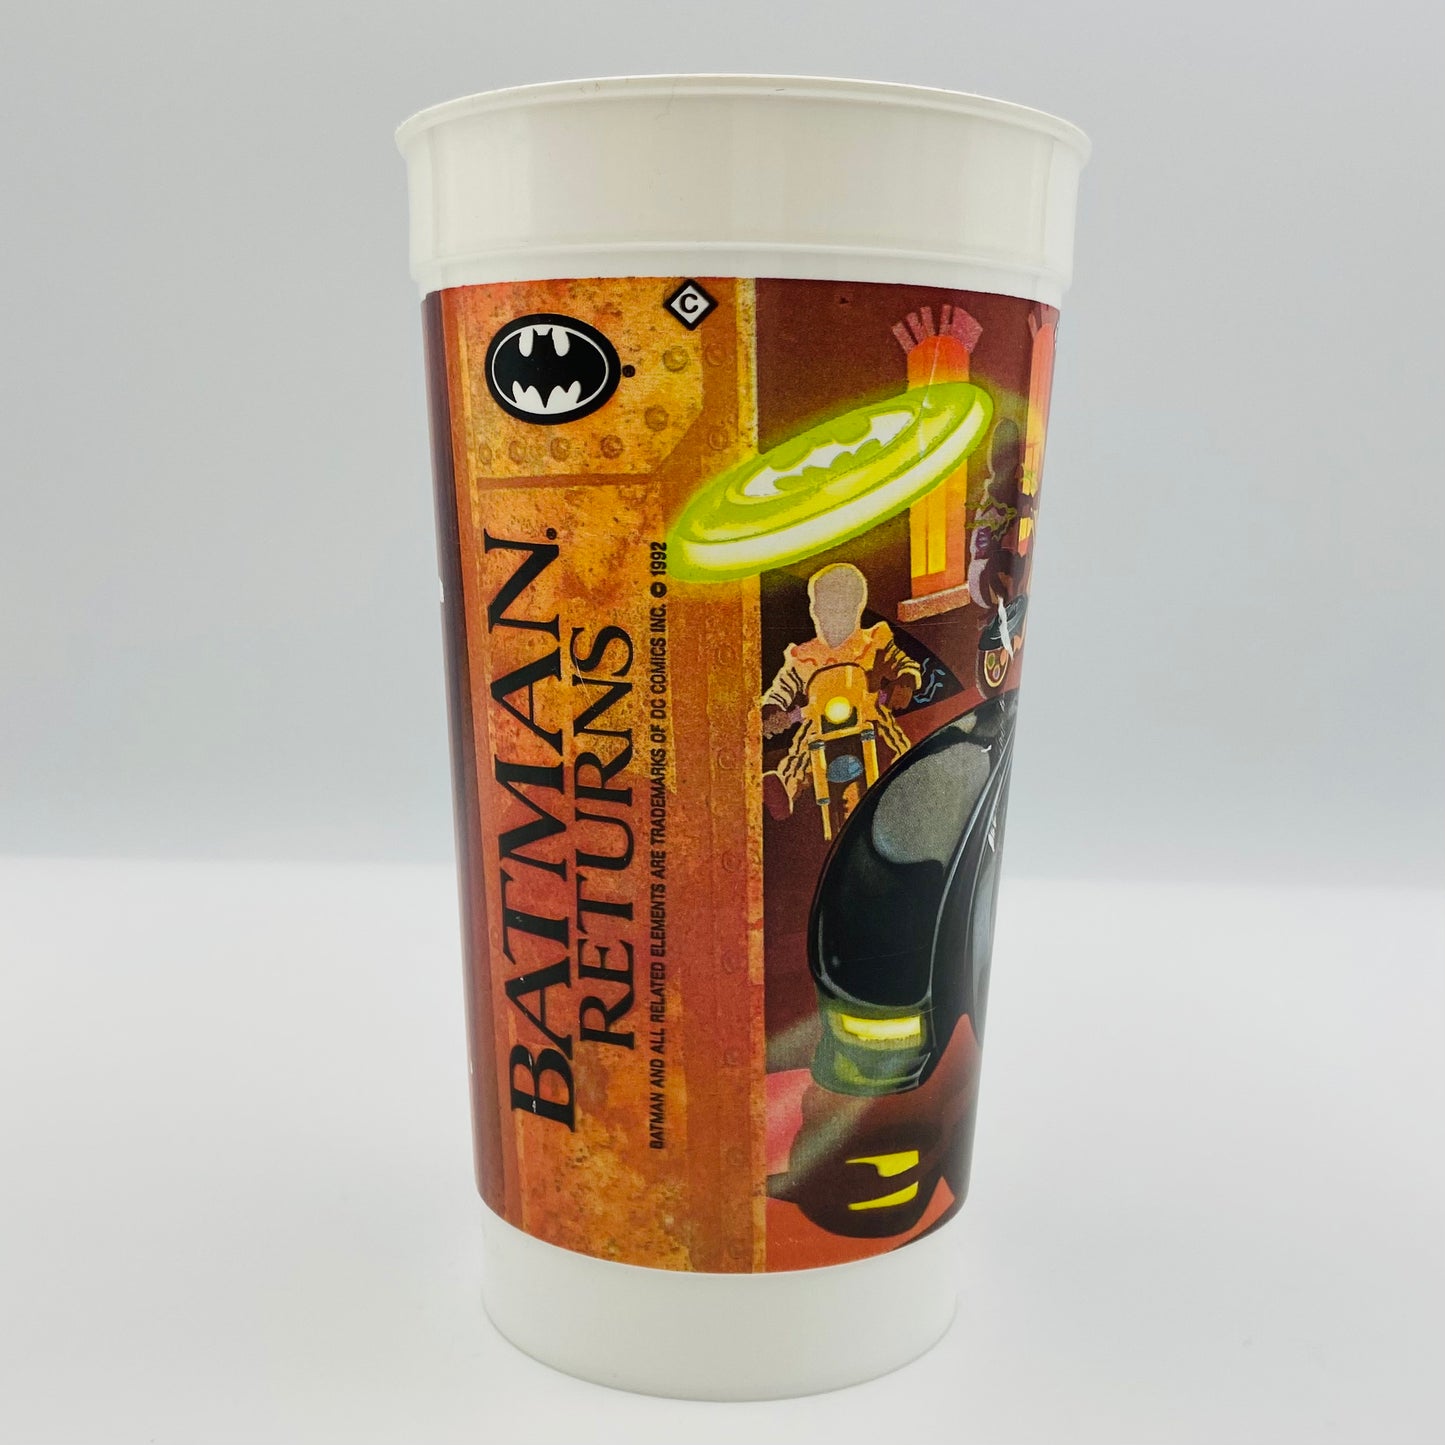 Batman Returns Batmobile 32oz plastic cup (1992) Mcdonald's